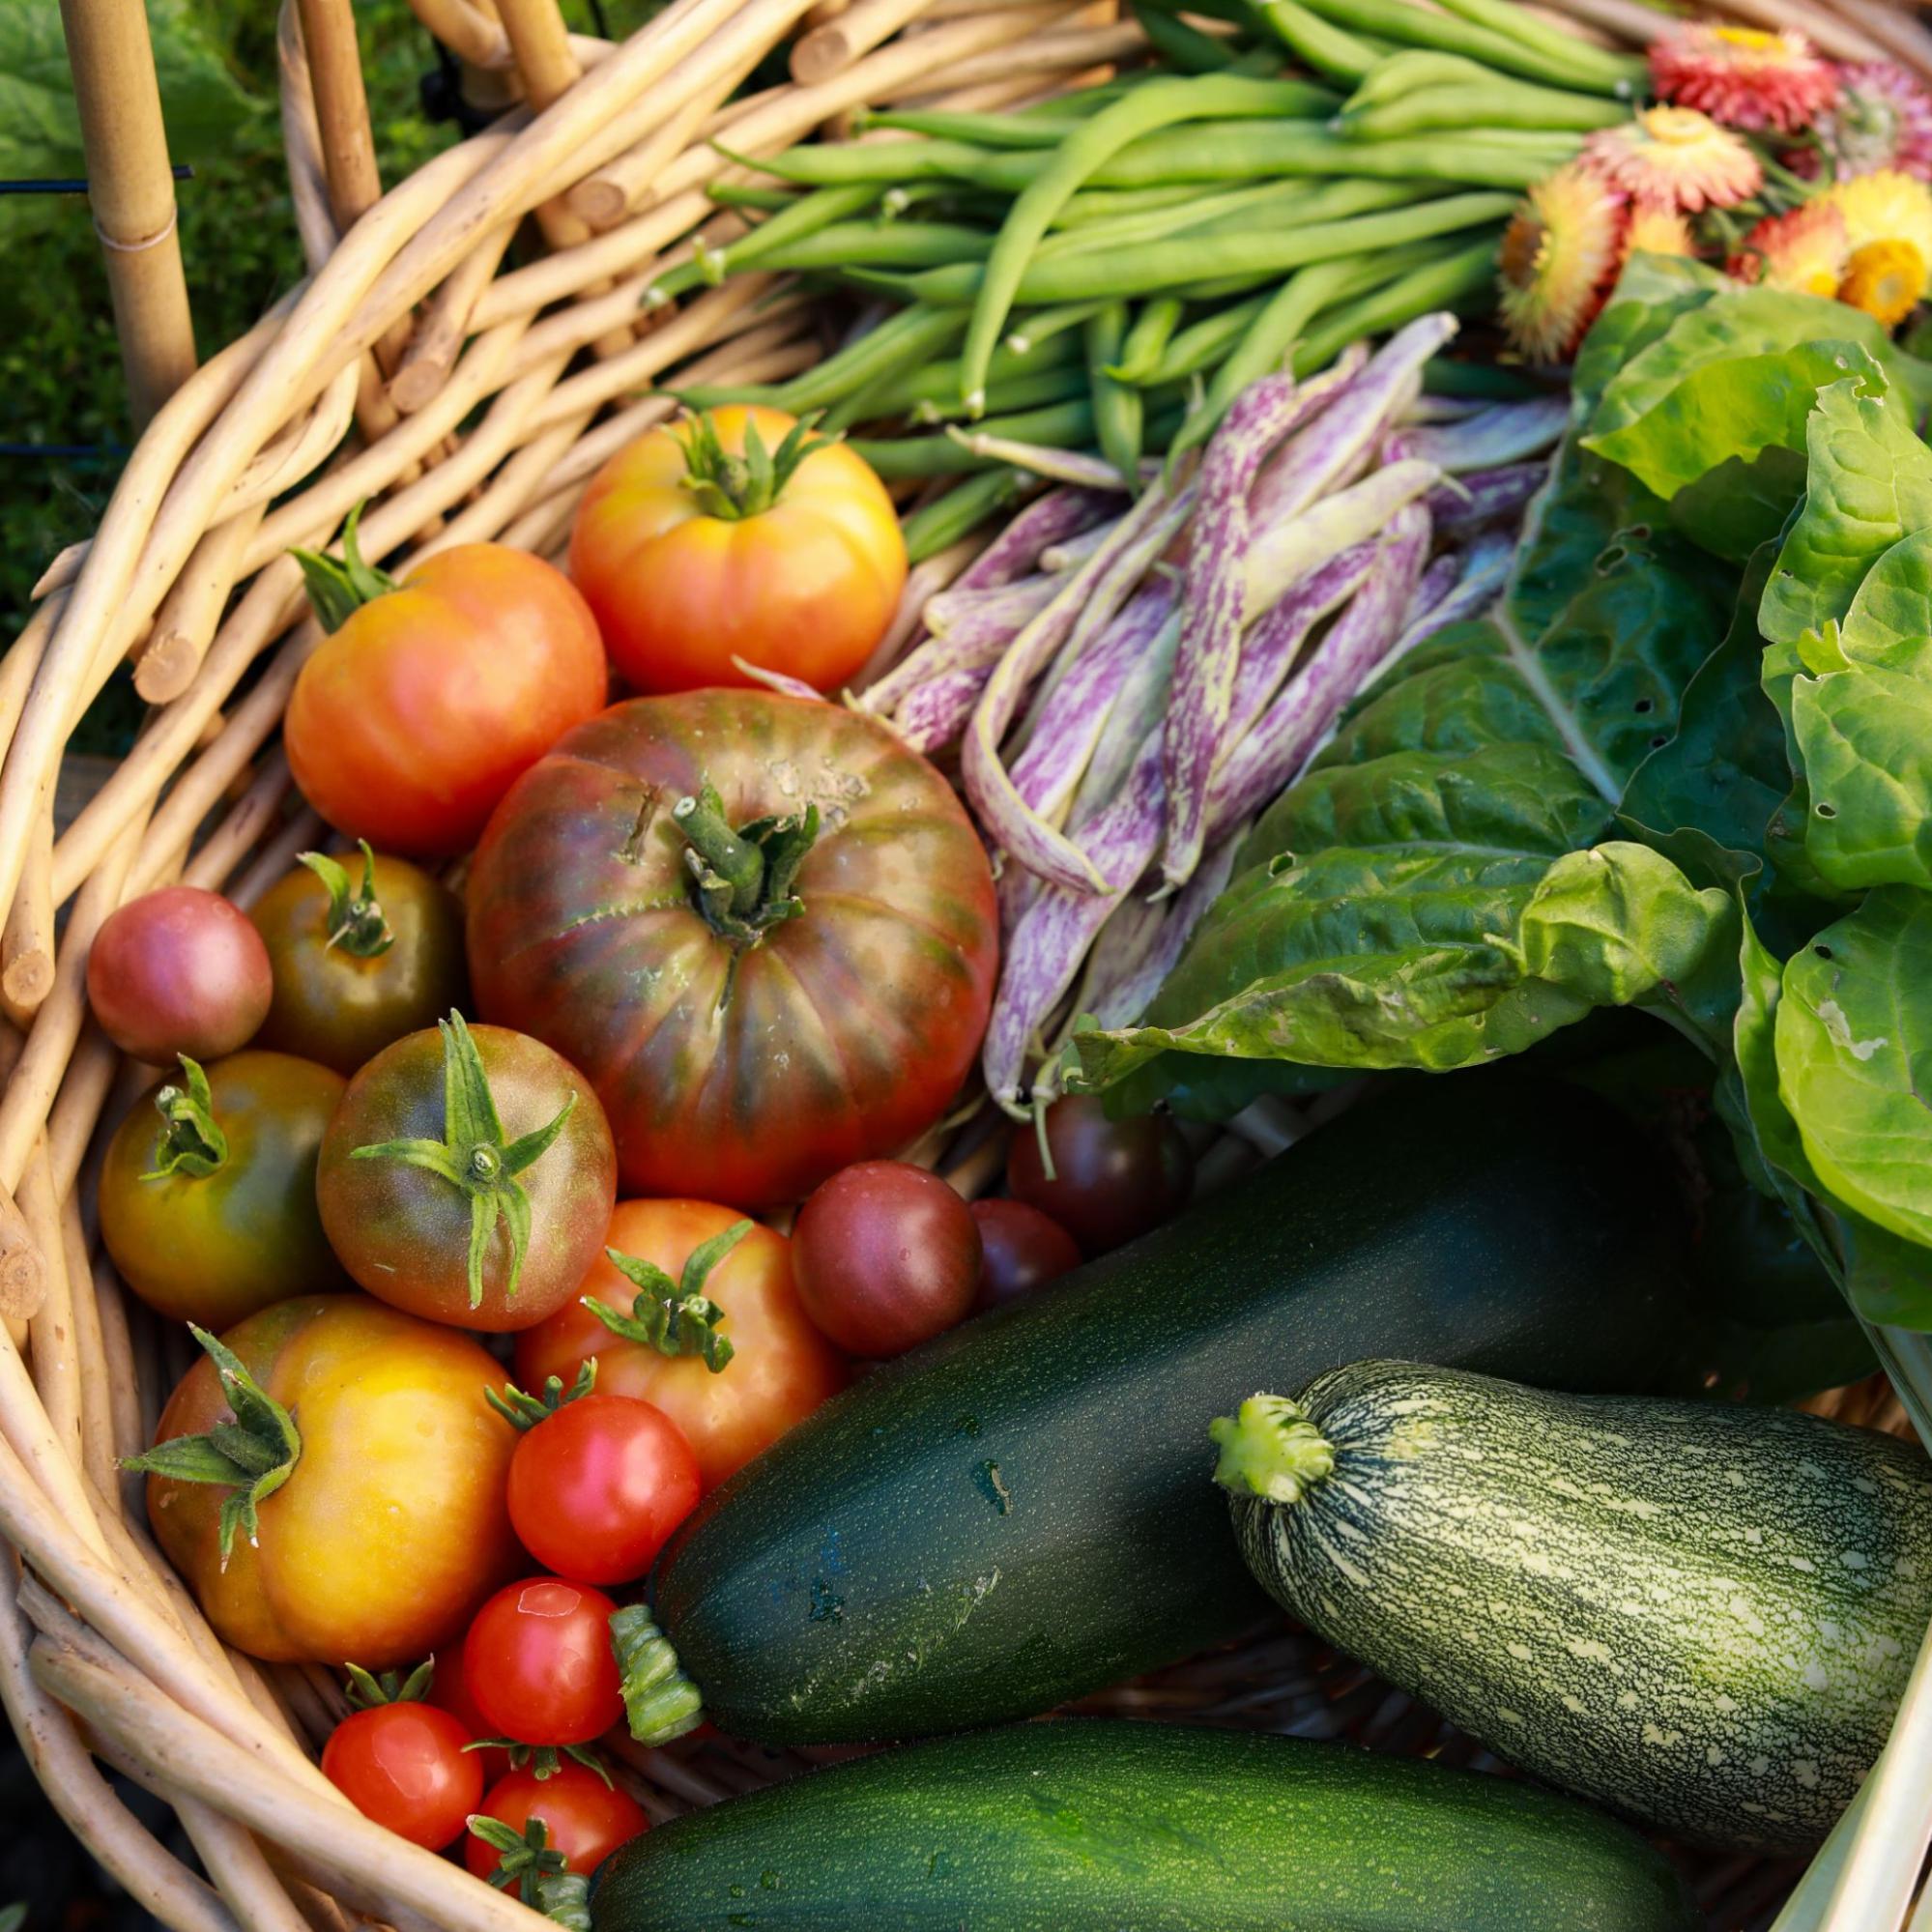 Basket of garden vegetables